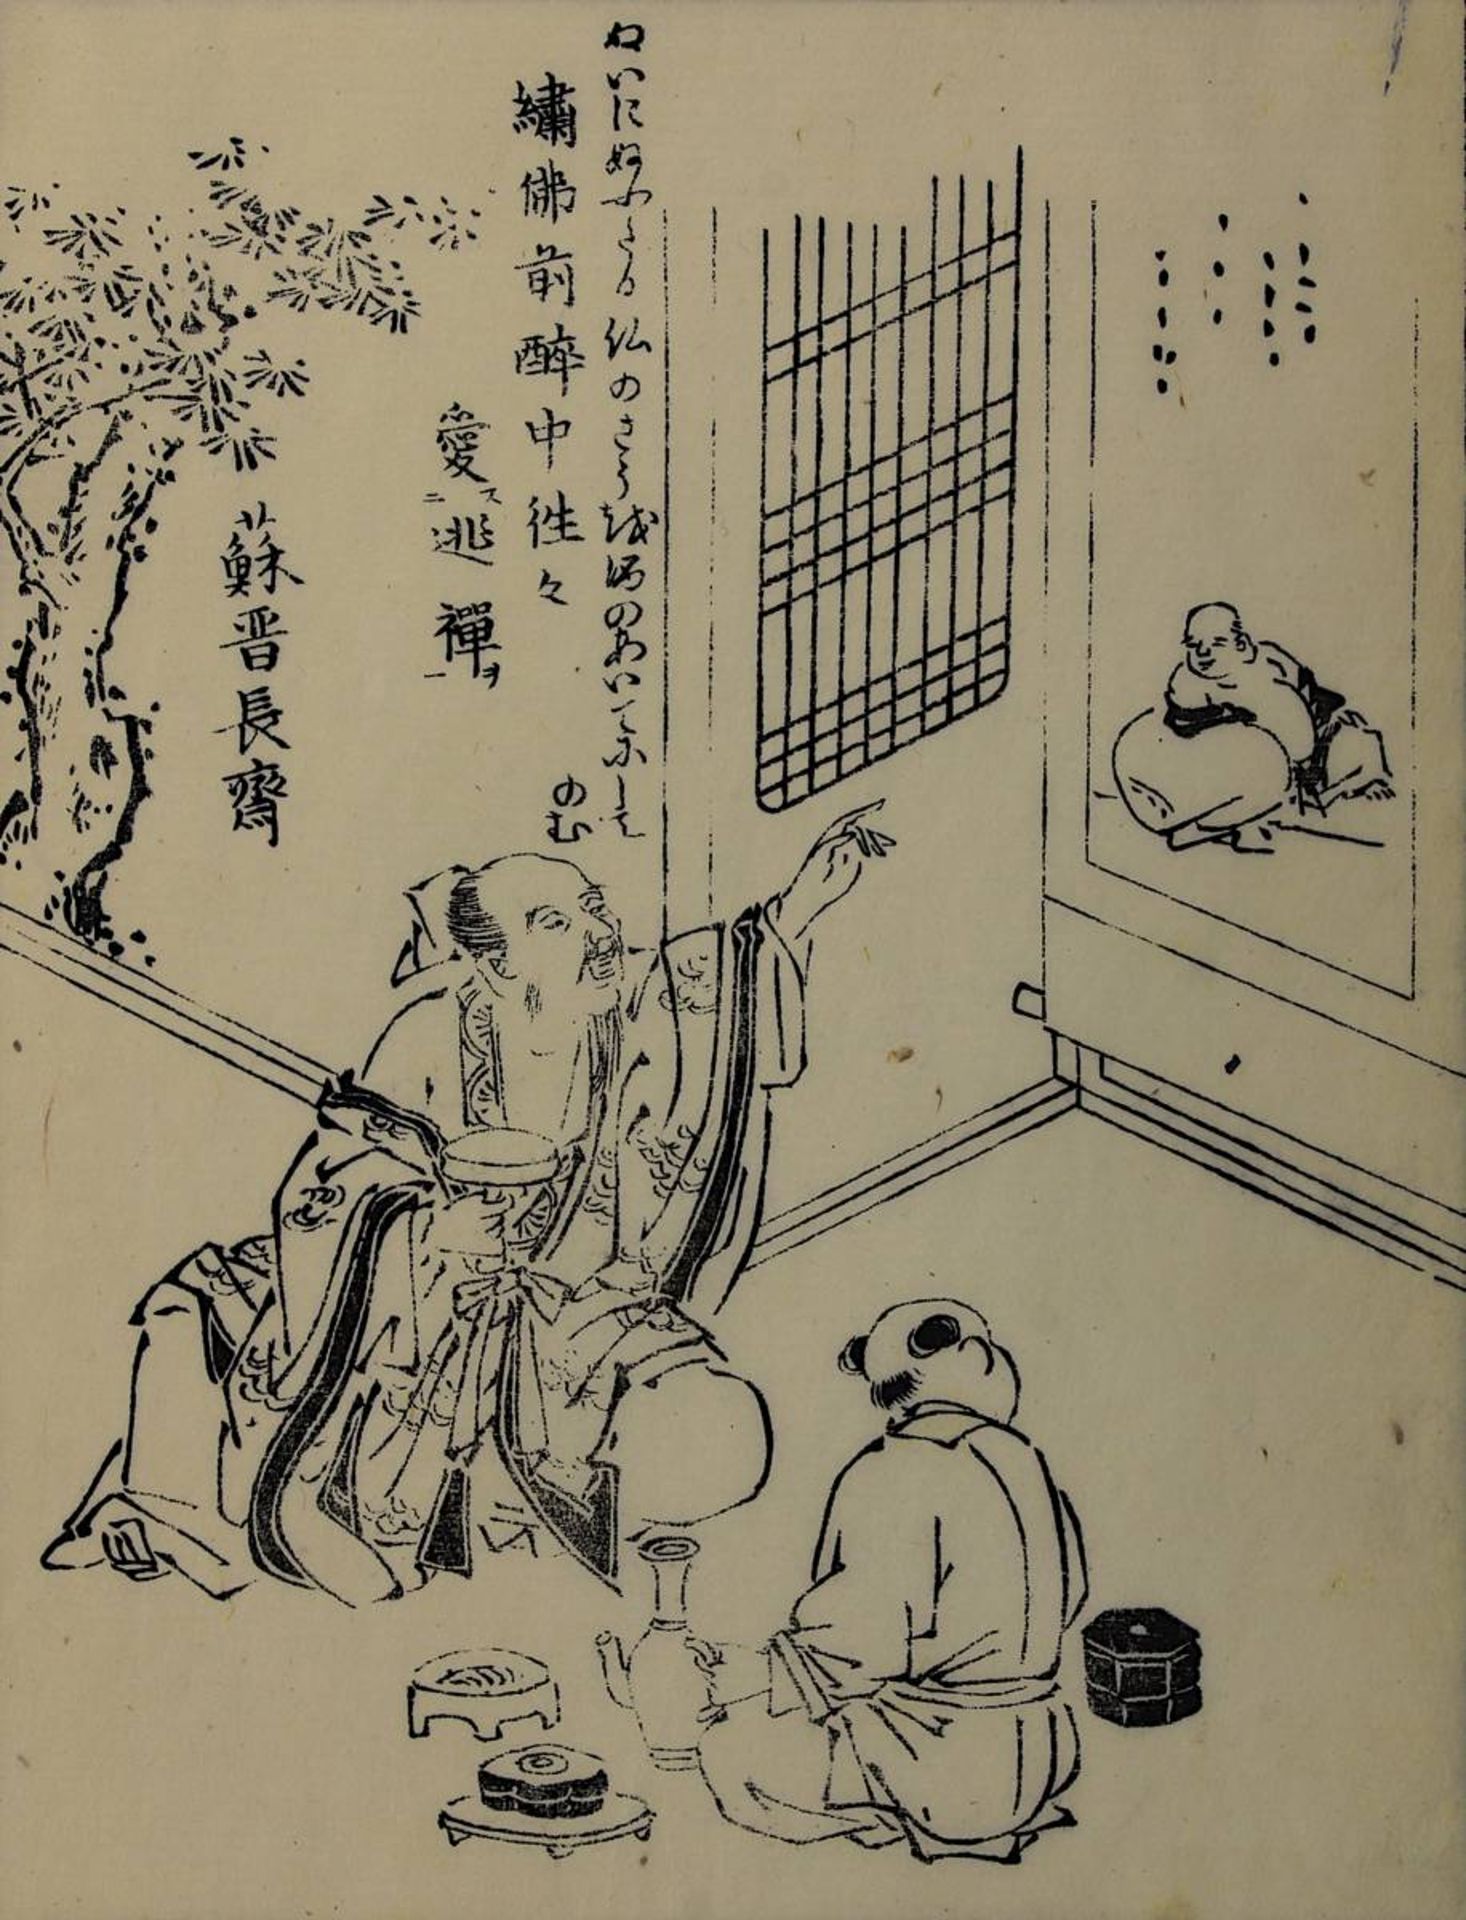 Buchseite mit japanischem Schwarzweiß-Holzschnitt, Anfang 19. Jh., Szenerie mit Weintrinker, der dem